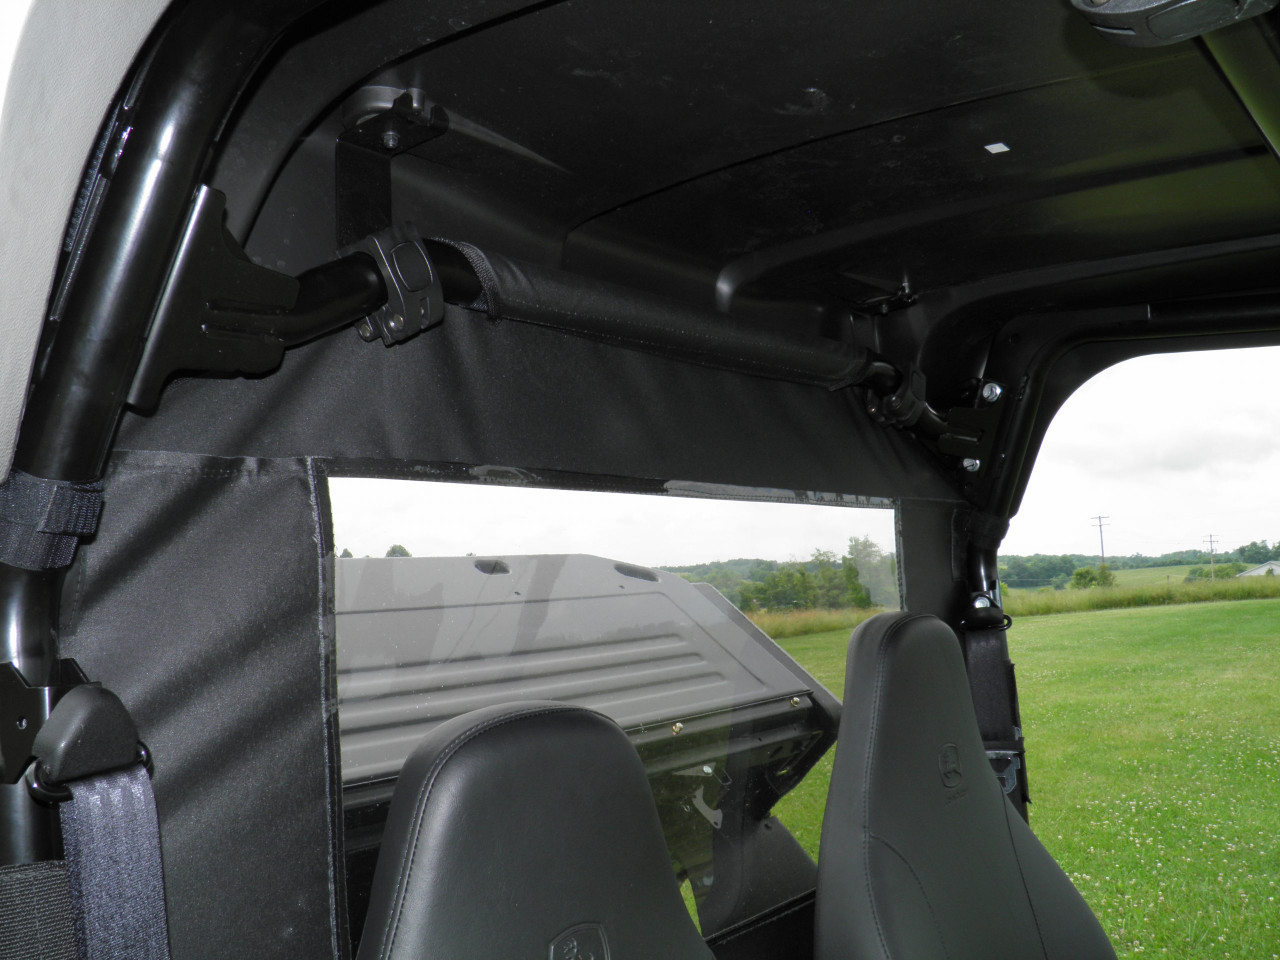 3 Star side x side John Deere HPX/XUV soft rear window interior view